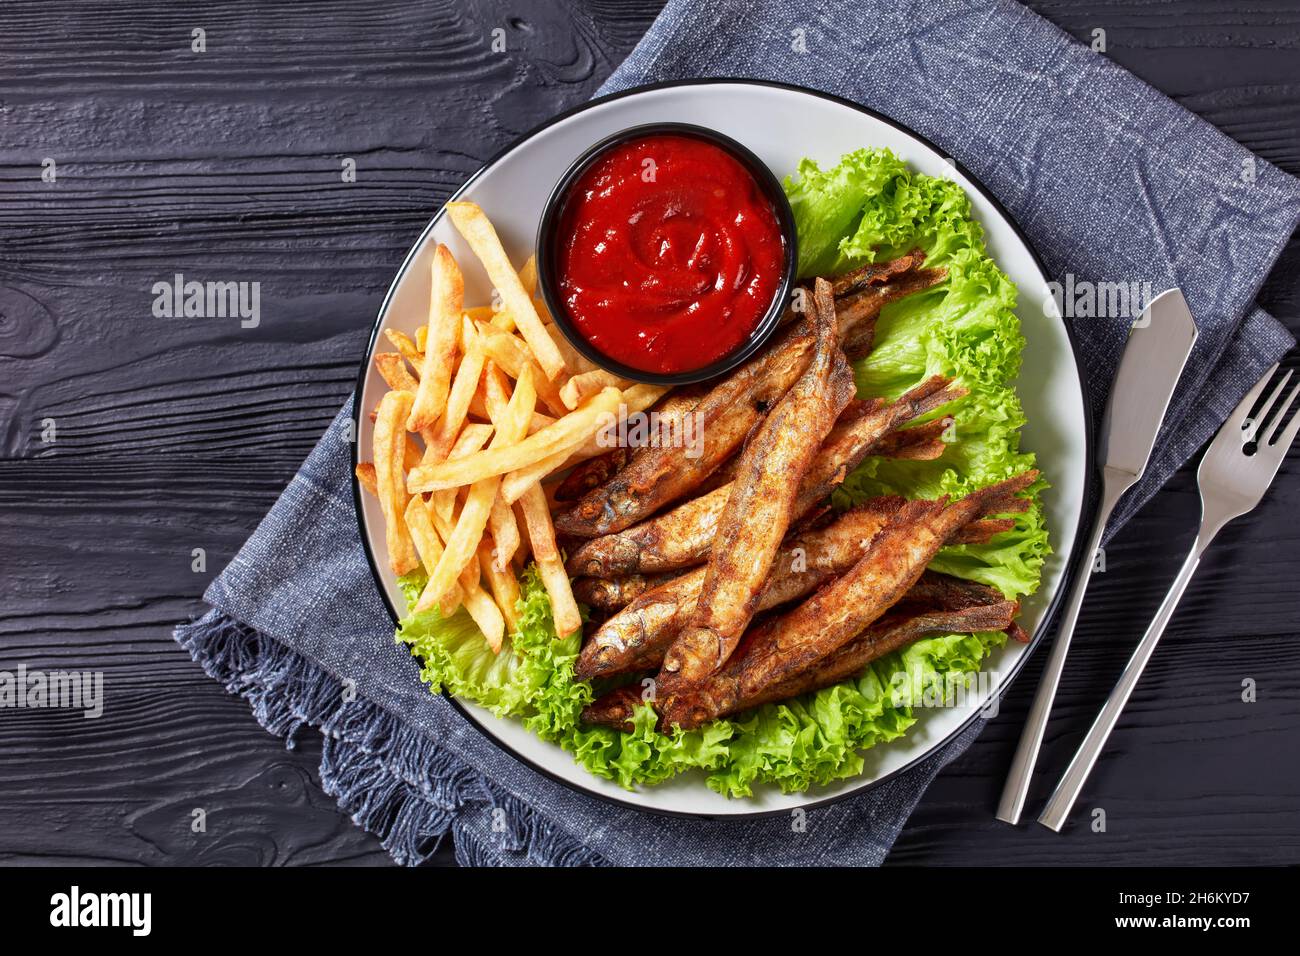 pesce fritto croccante di capelin con lattuga fresca, patatine fritte e salsa di pomodoro su un piatto su un tavolo di legno nero testurizzato, piatto, spazio libero Foto Stock